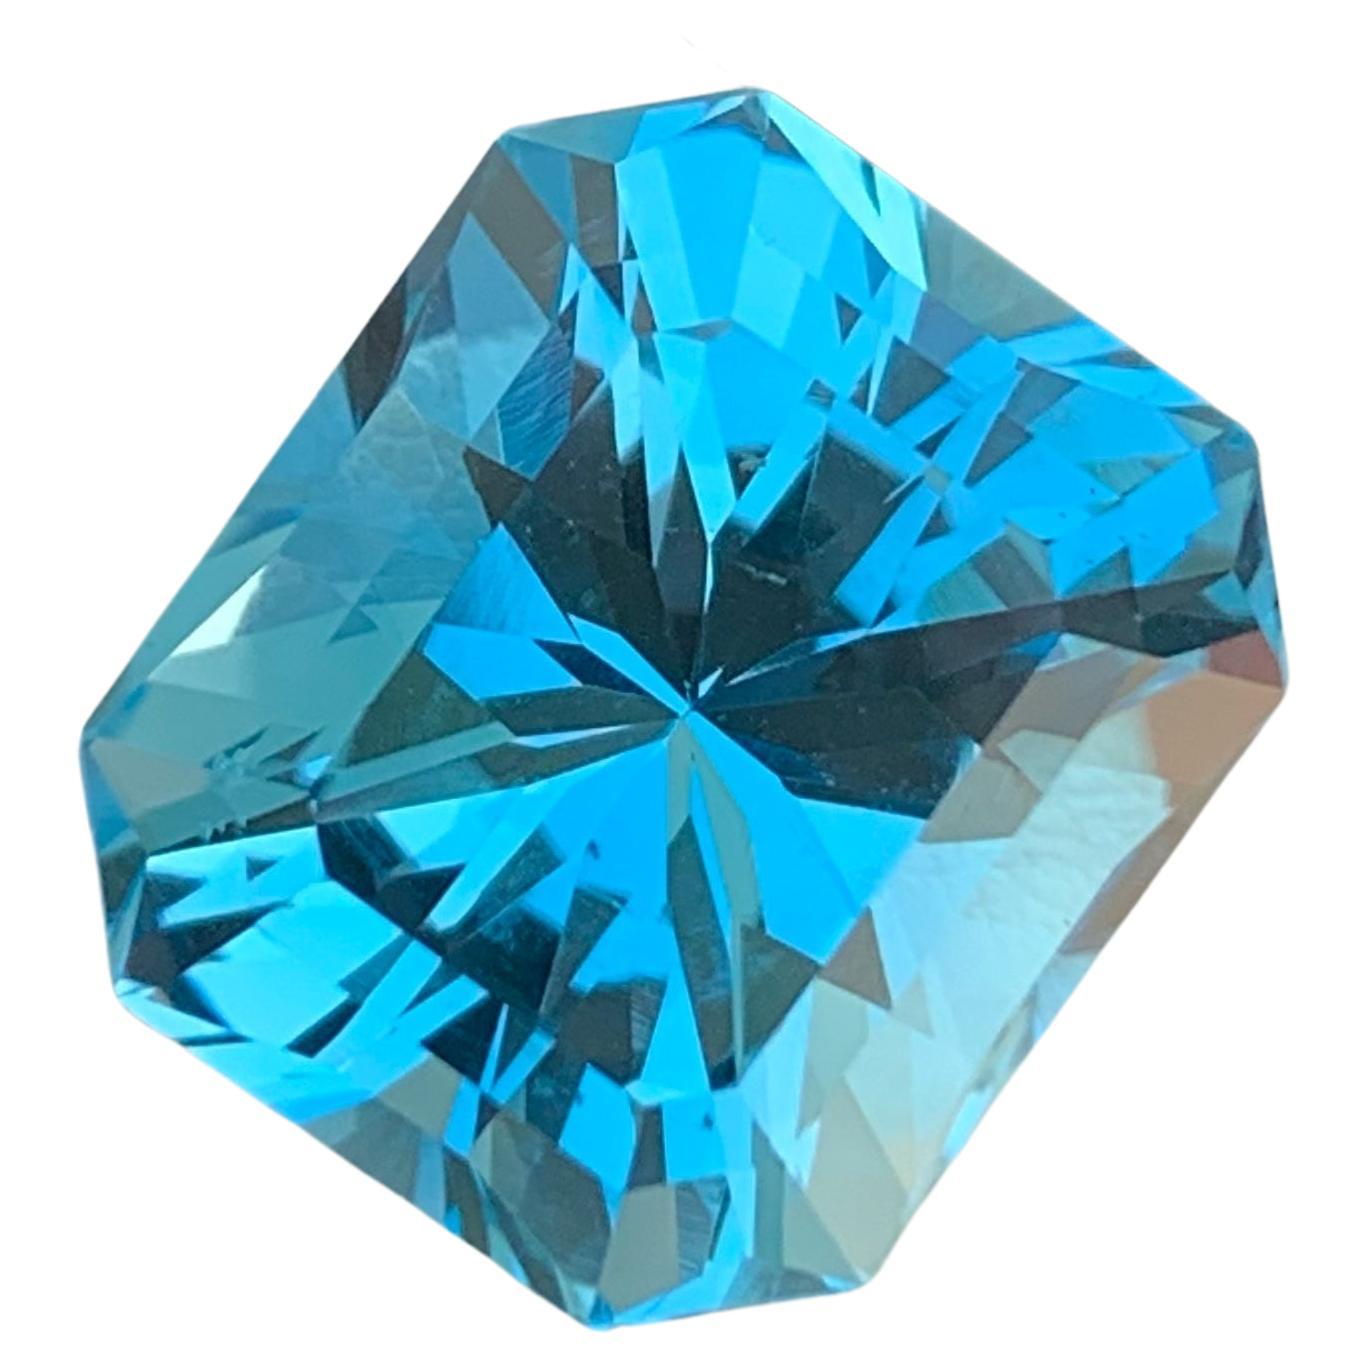 Radiantly Swiss Blue Topaz Gemstone 24.65 Carats Quality Stone Topaz Jewelry For Sale